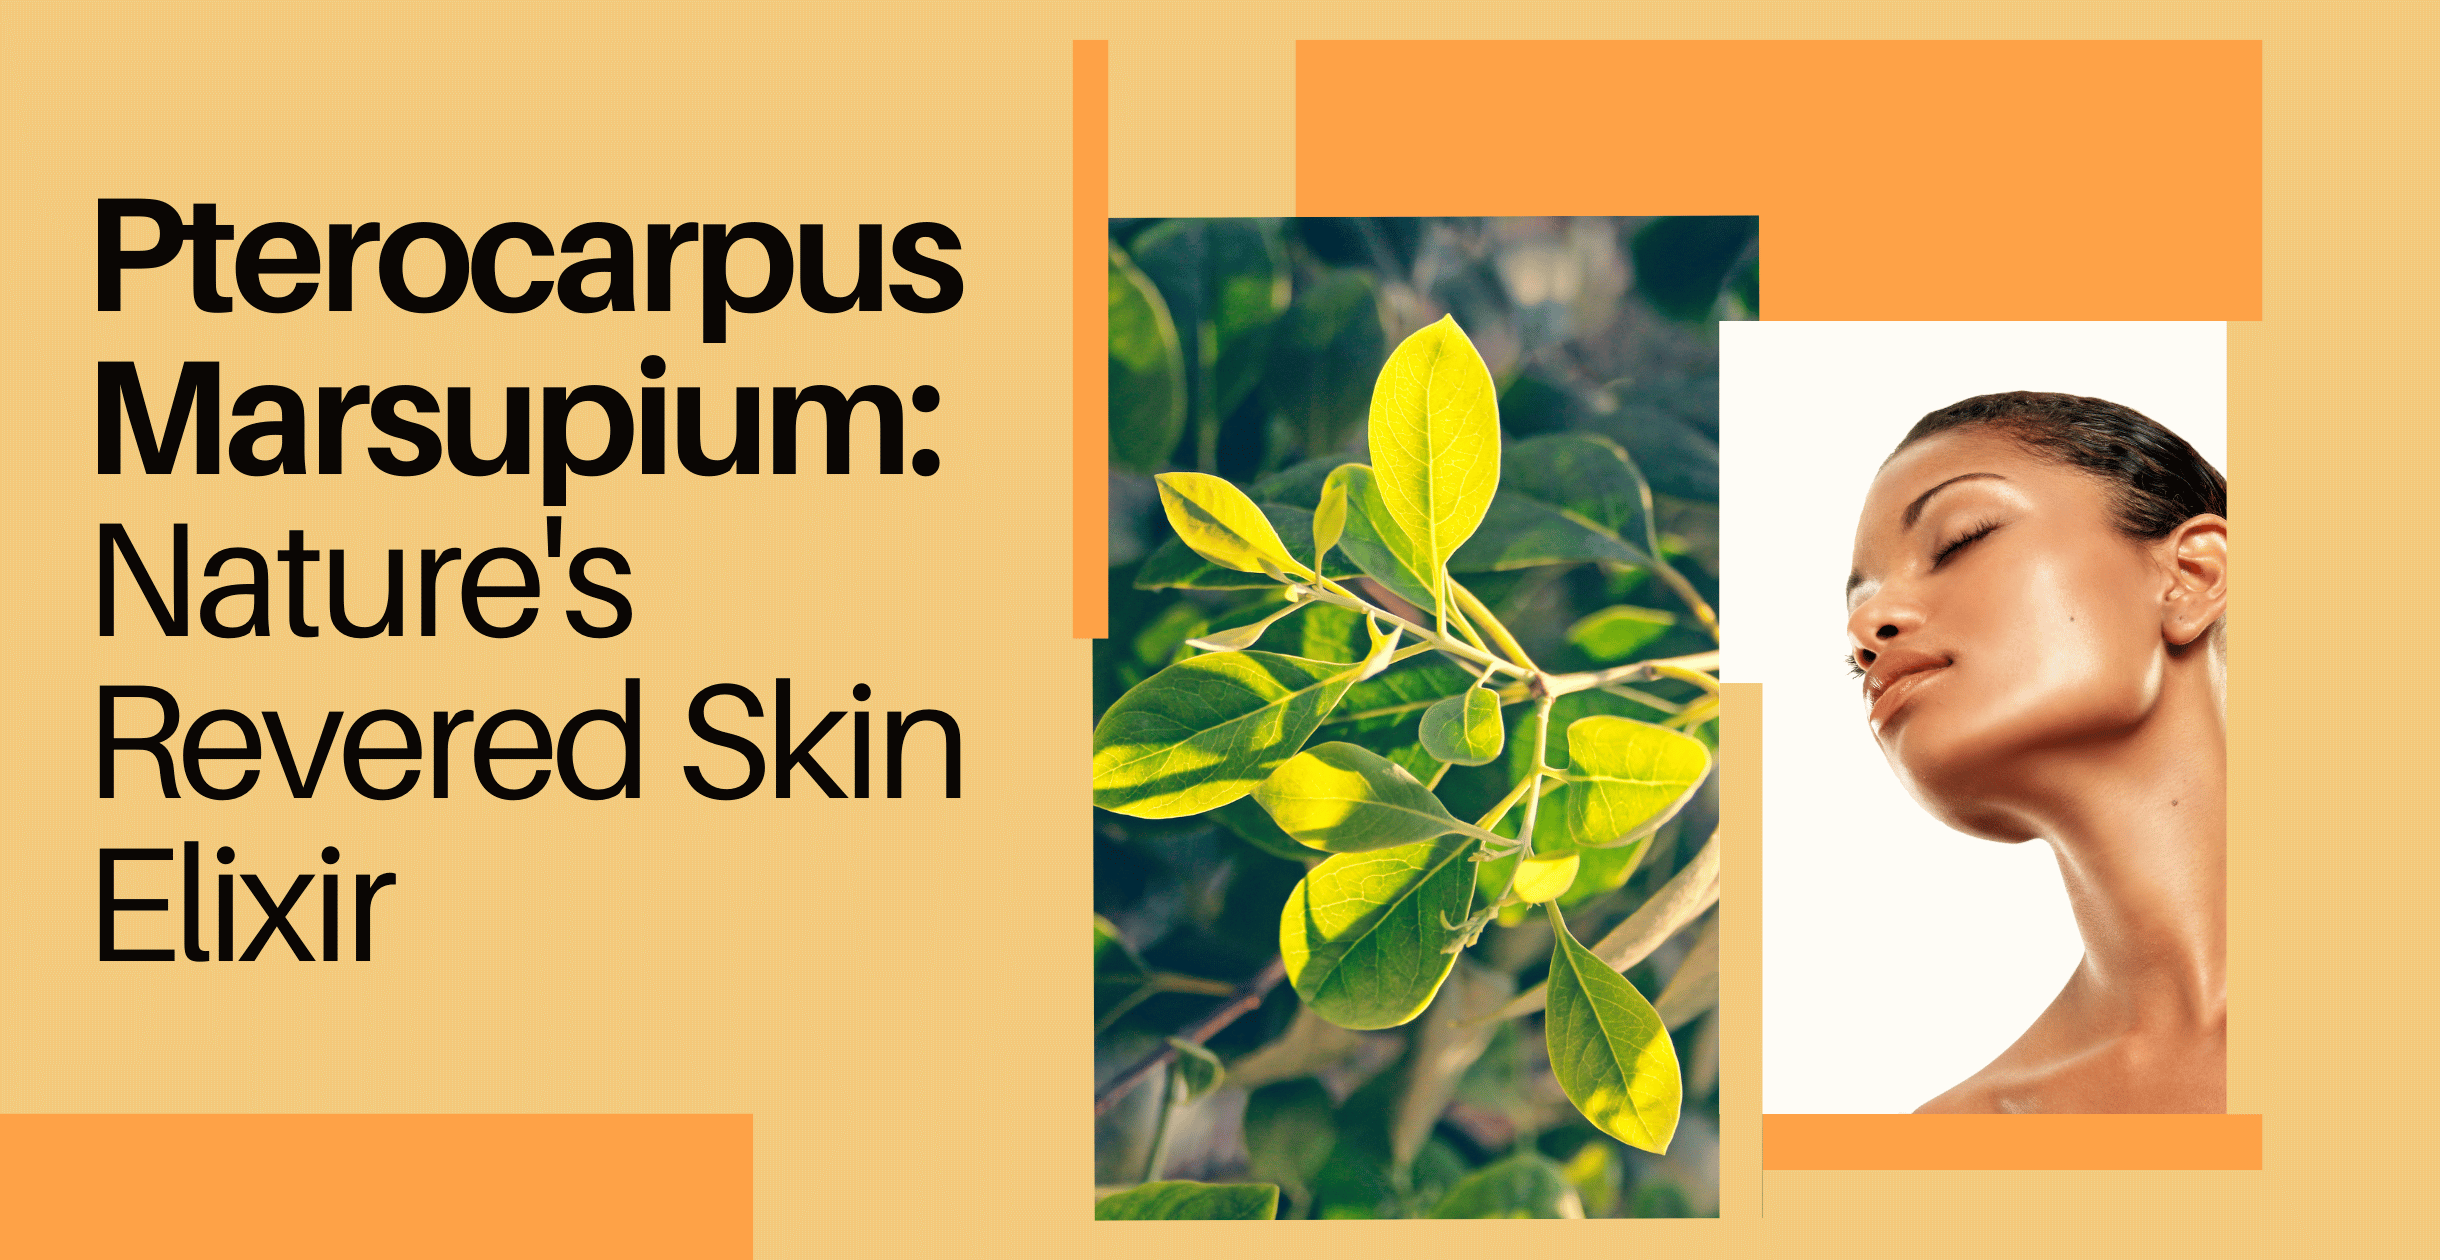 Pterocarpus Marsupium: Nature's Revered Skin Elixir